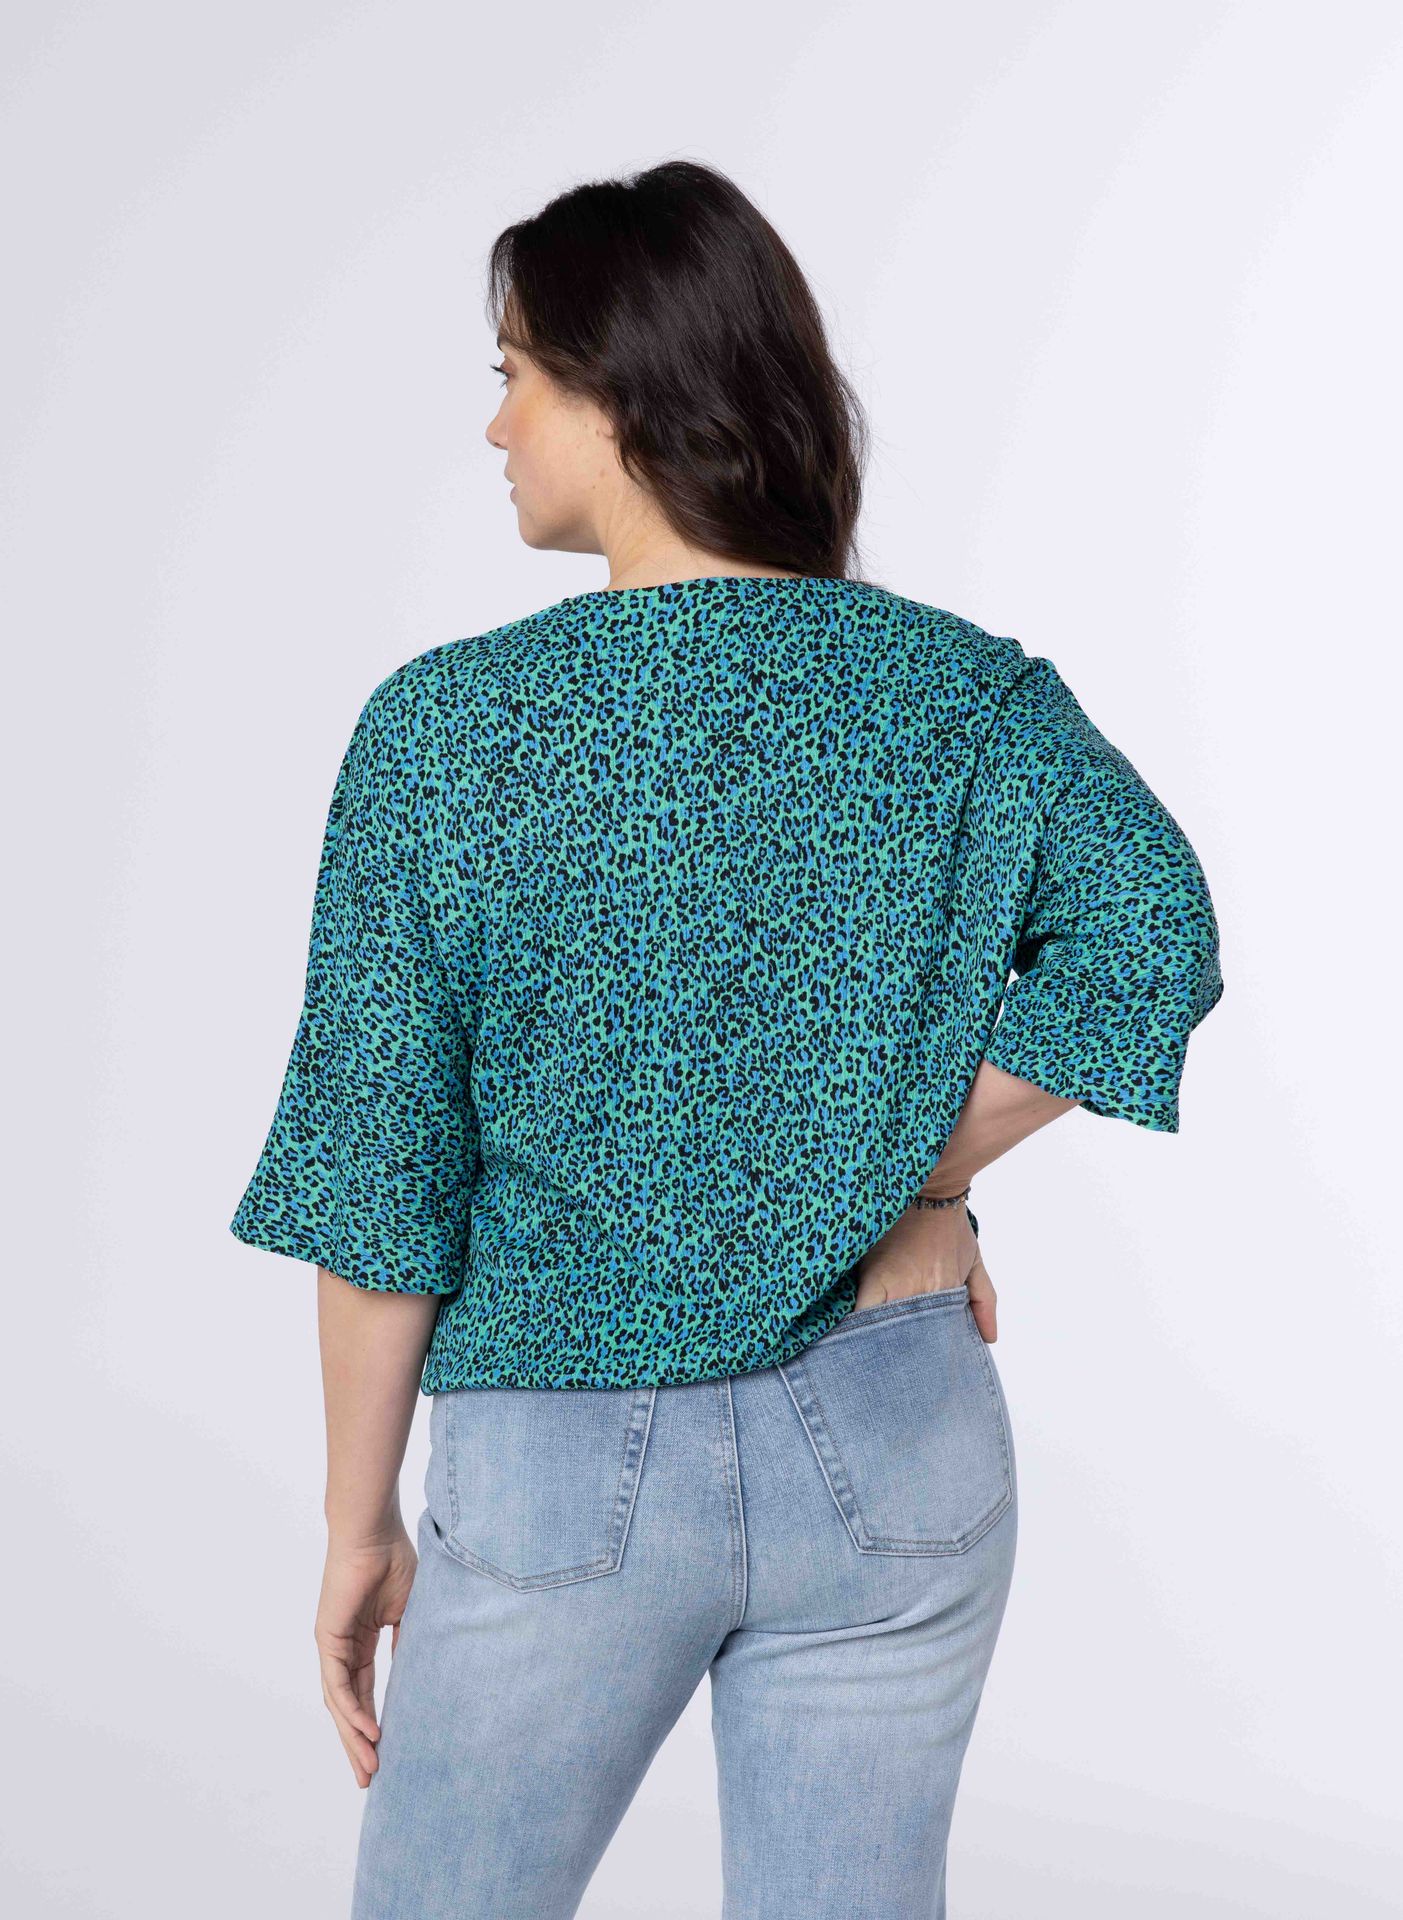 Norah Groen shirt met driekwart mouwen green/blue 213430-534